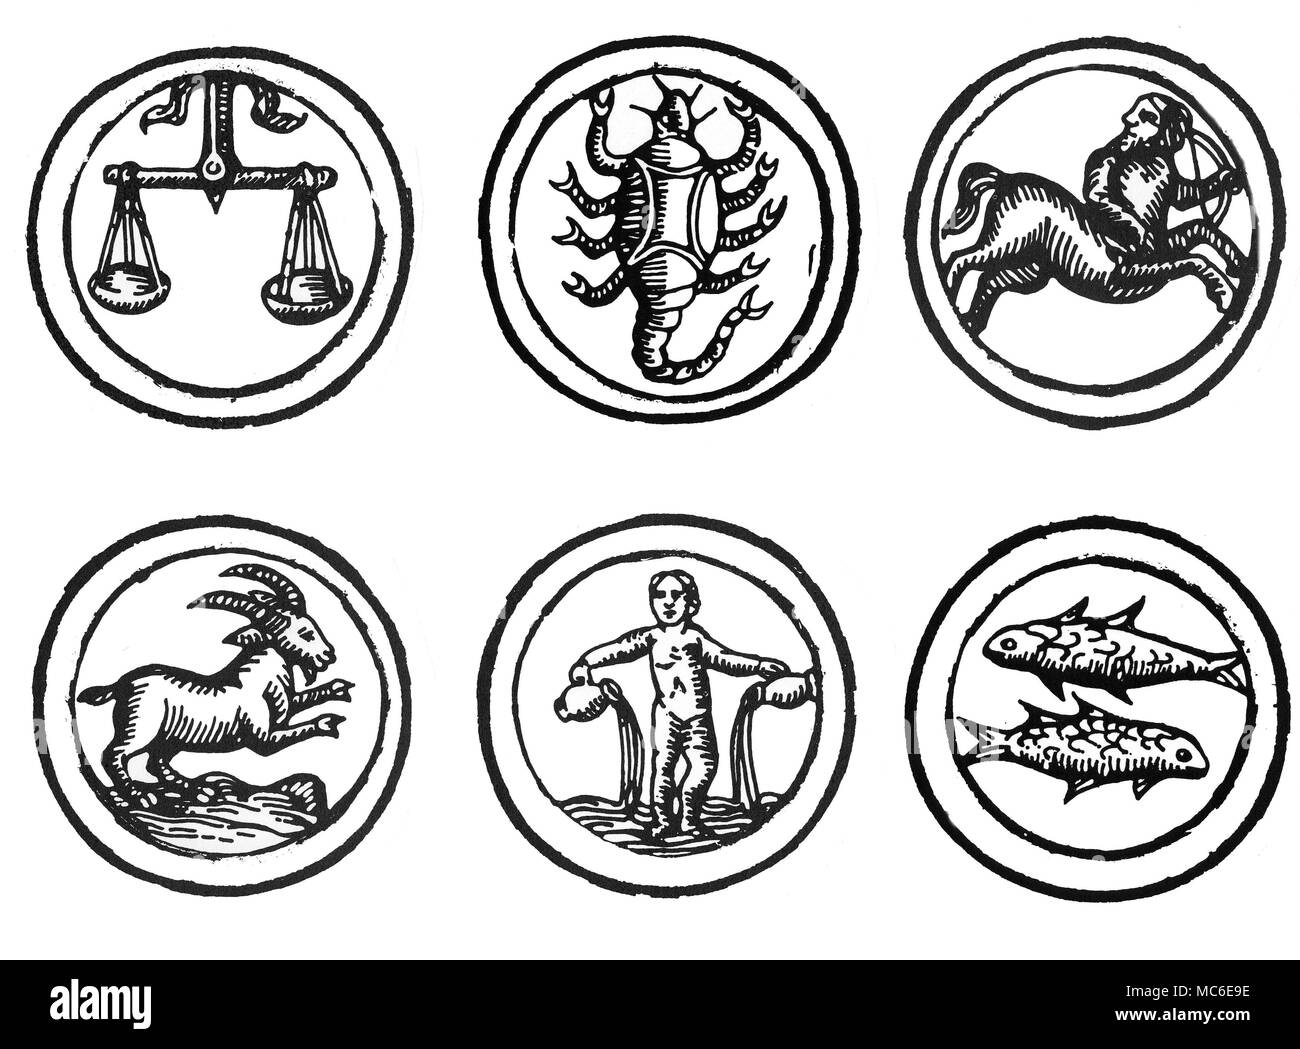 Astrologie - ZODIAQUES Six images des douze signes du zodiaque - Balance, Scorpion, Sagittaire, Capricorne, Verseau et poissons (images des six autres sont disponibles). D'un berger allemand Calendrier de 1520. Banque D'Images